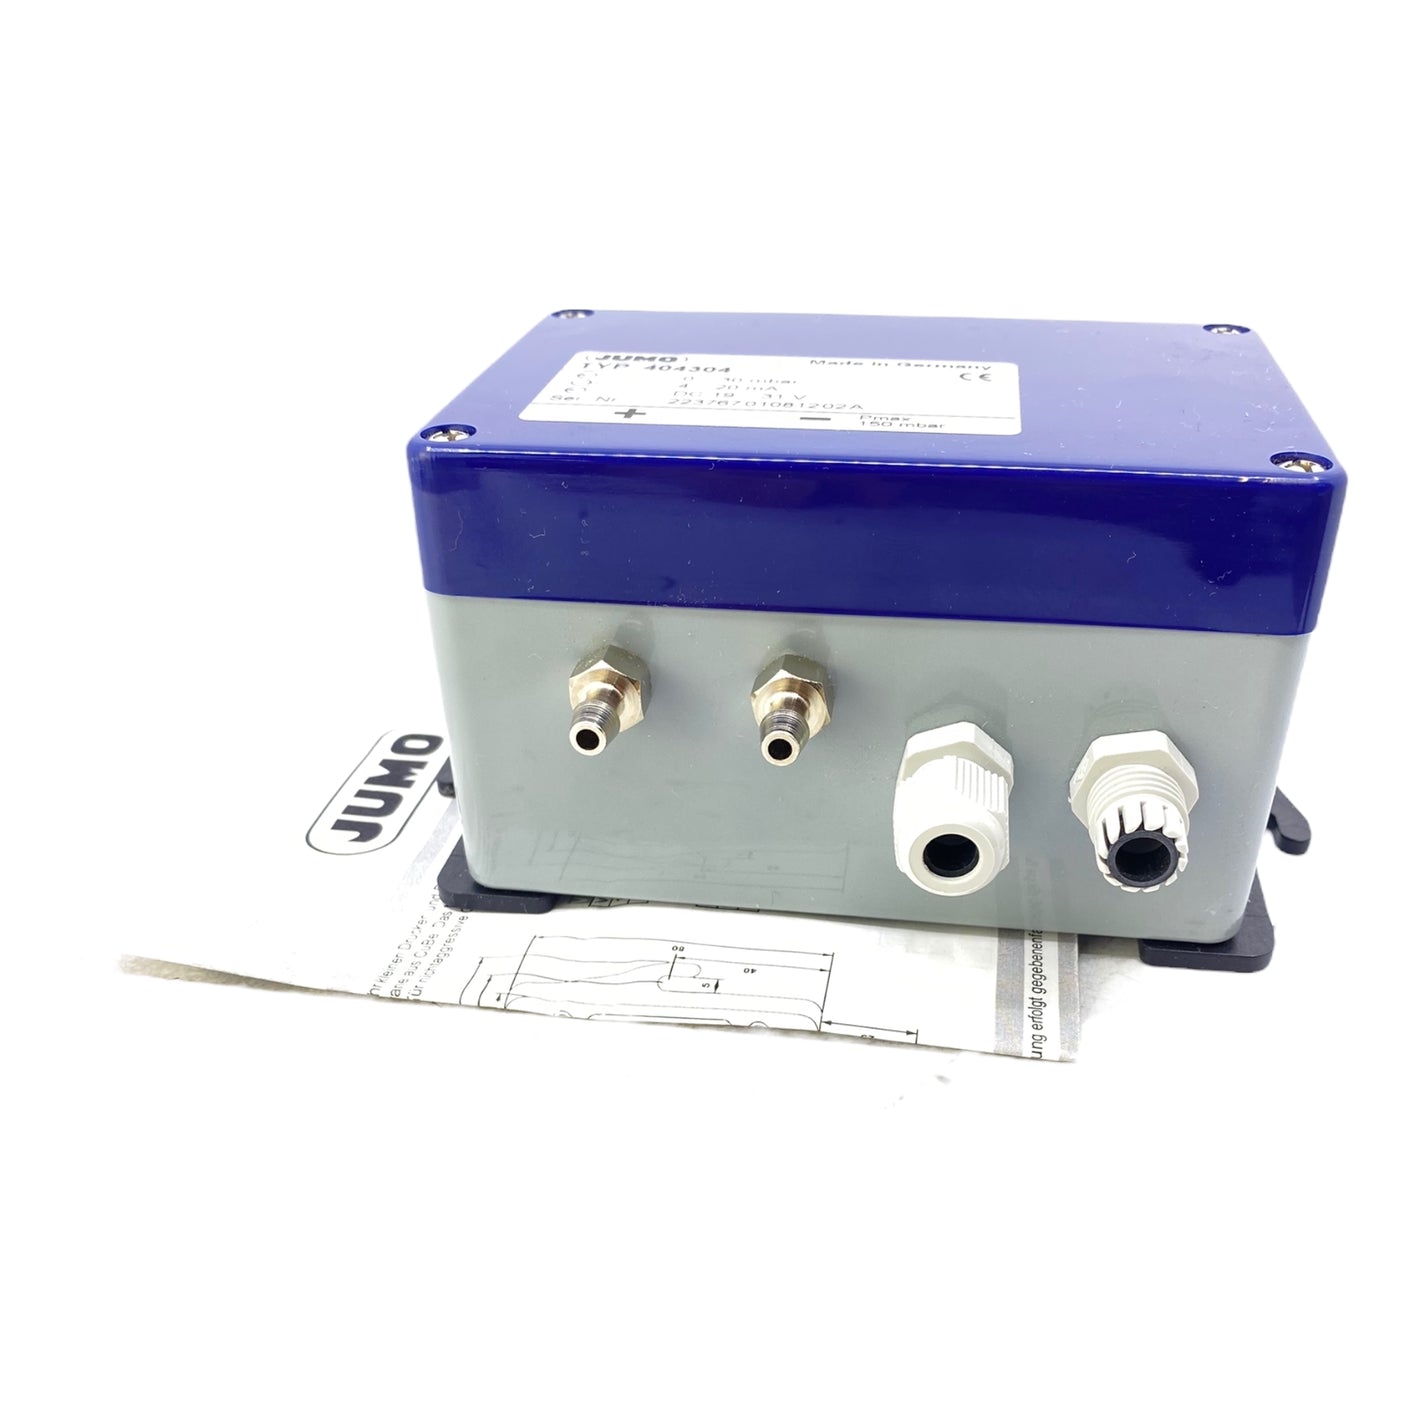 JUMO 404304 Druck- und Differenzdruckmessumformer Pmax: 150mbar